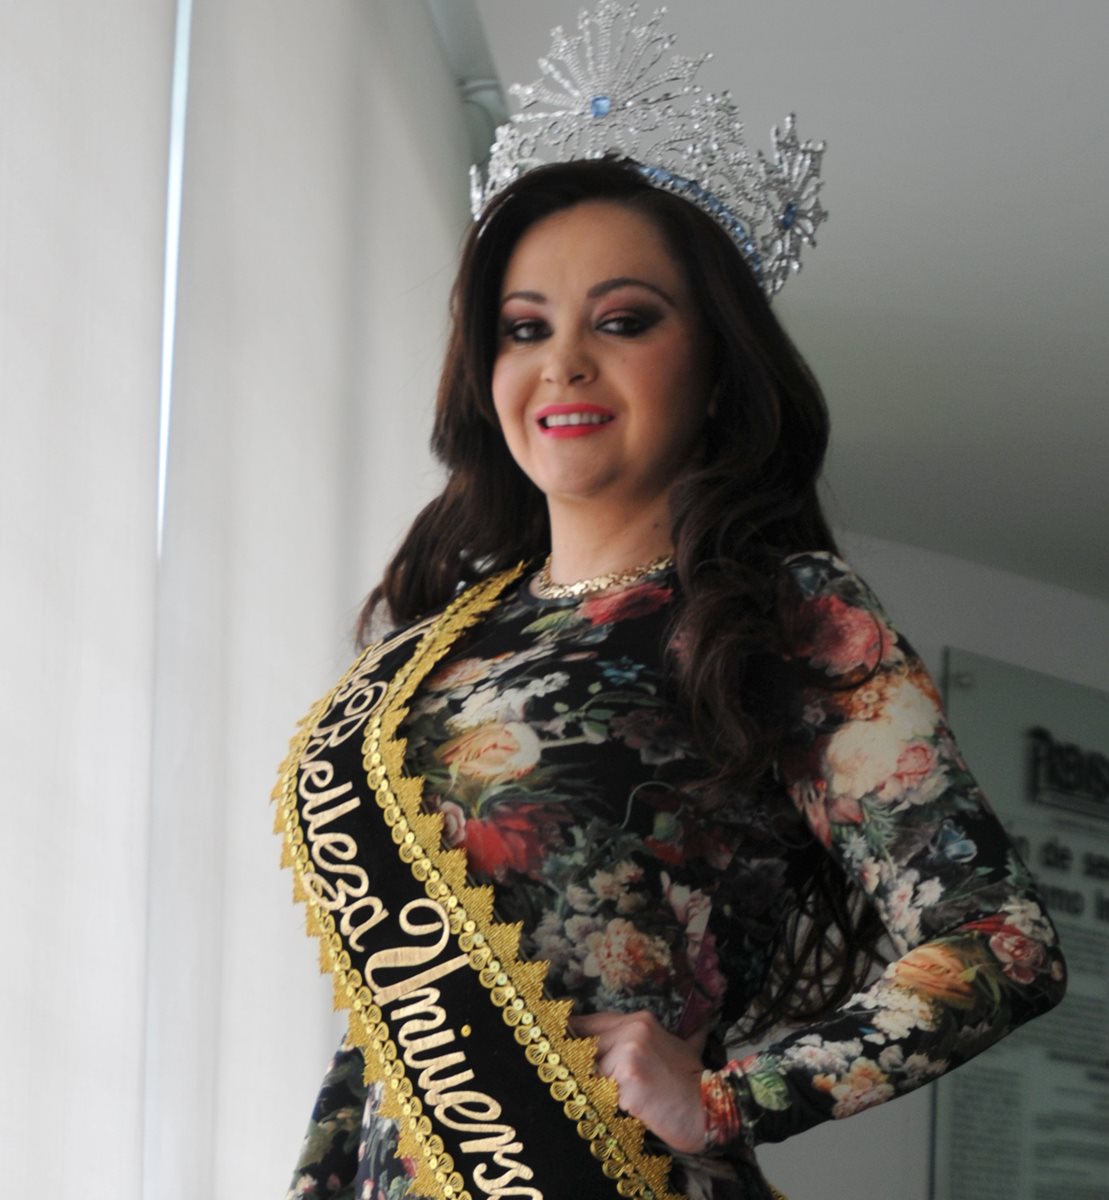 Saraí Rodríguez se prepara para cumplir con la agenda como reina internacional. (Foto Prensa Libre: Ángel Elías)